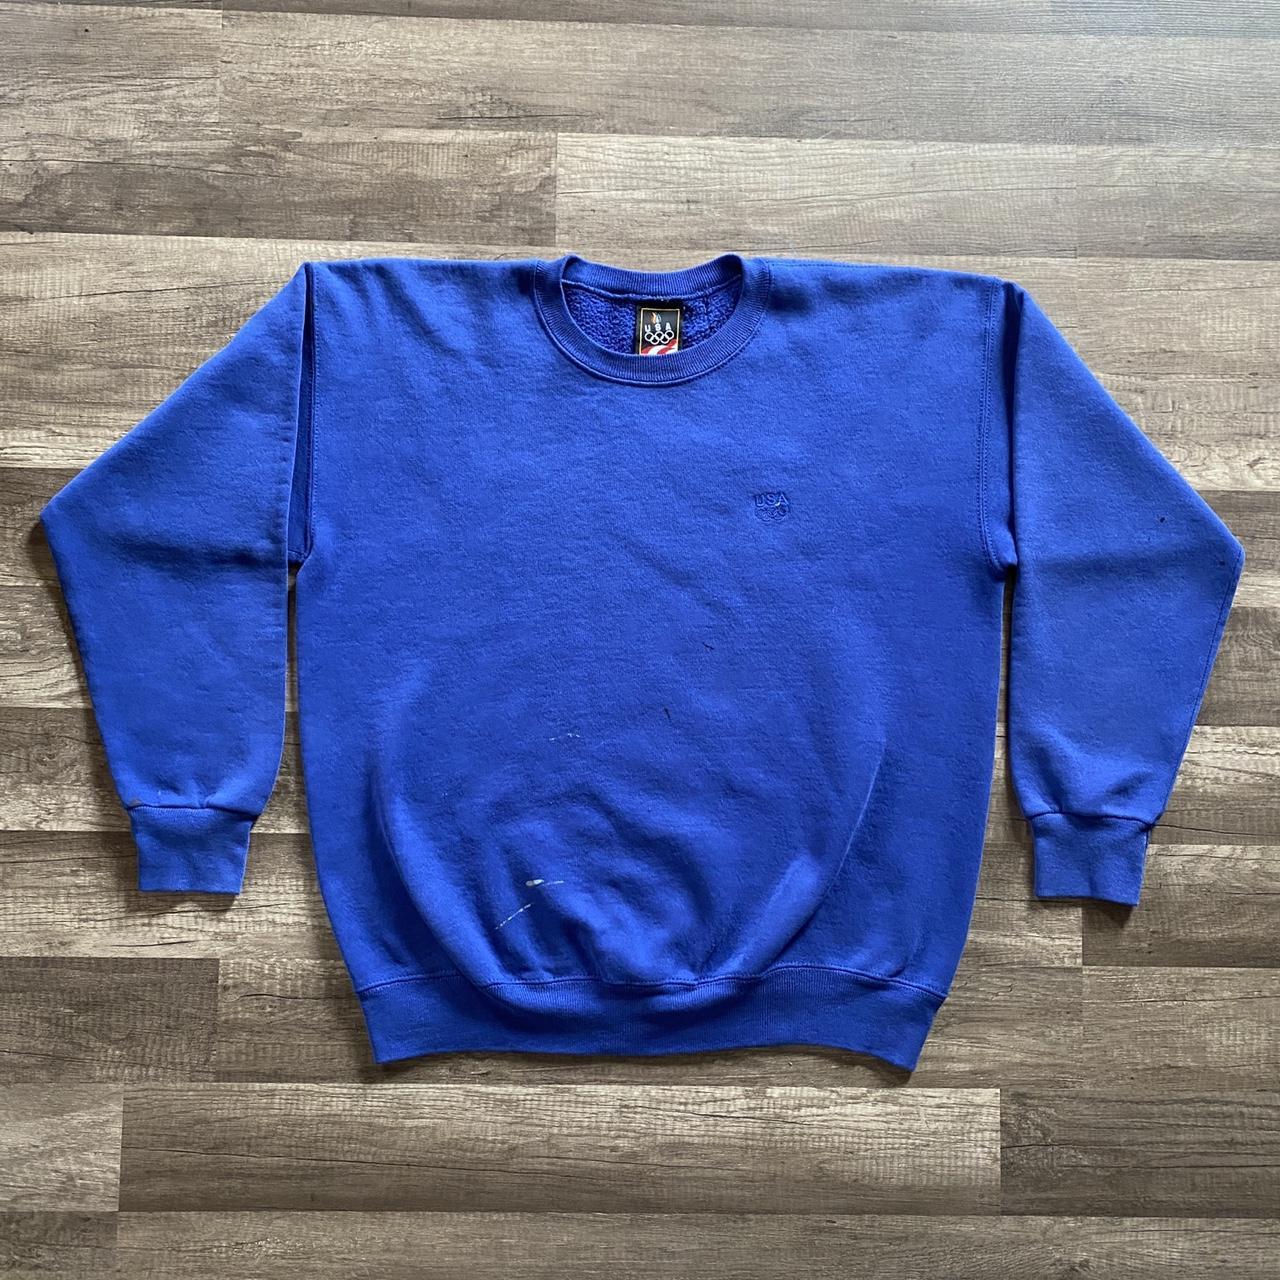 JCPenney Men's Blue Sweatshirt | Depop